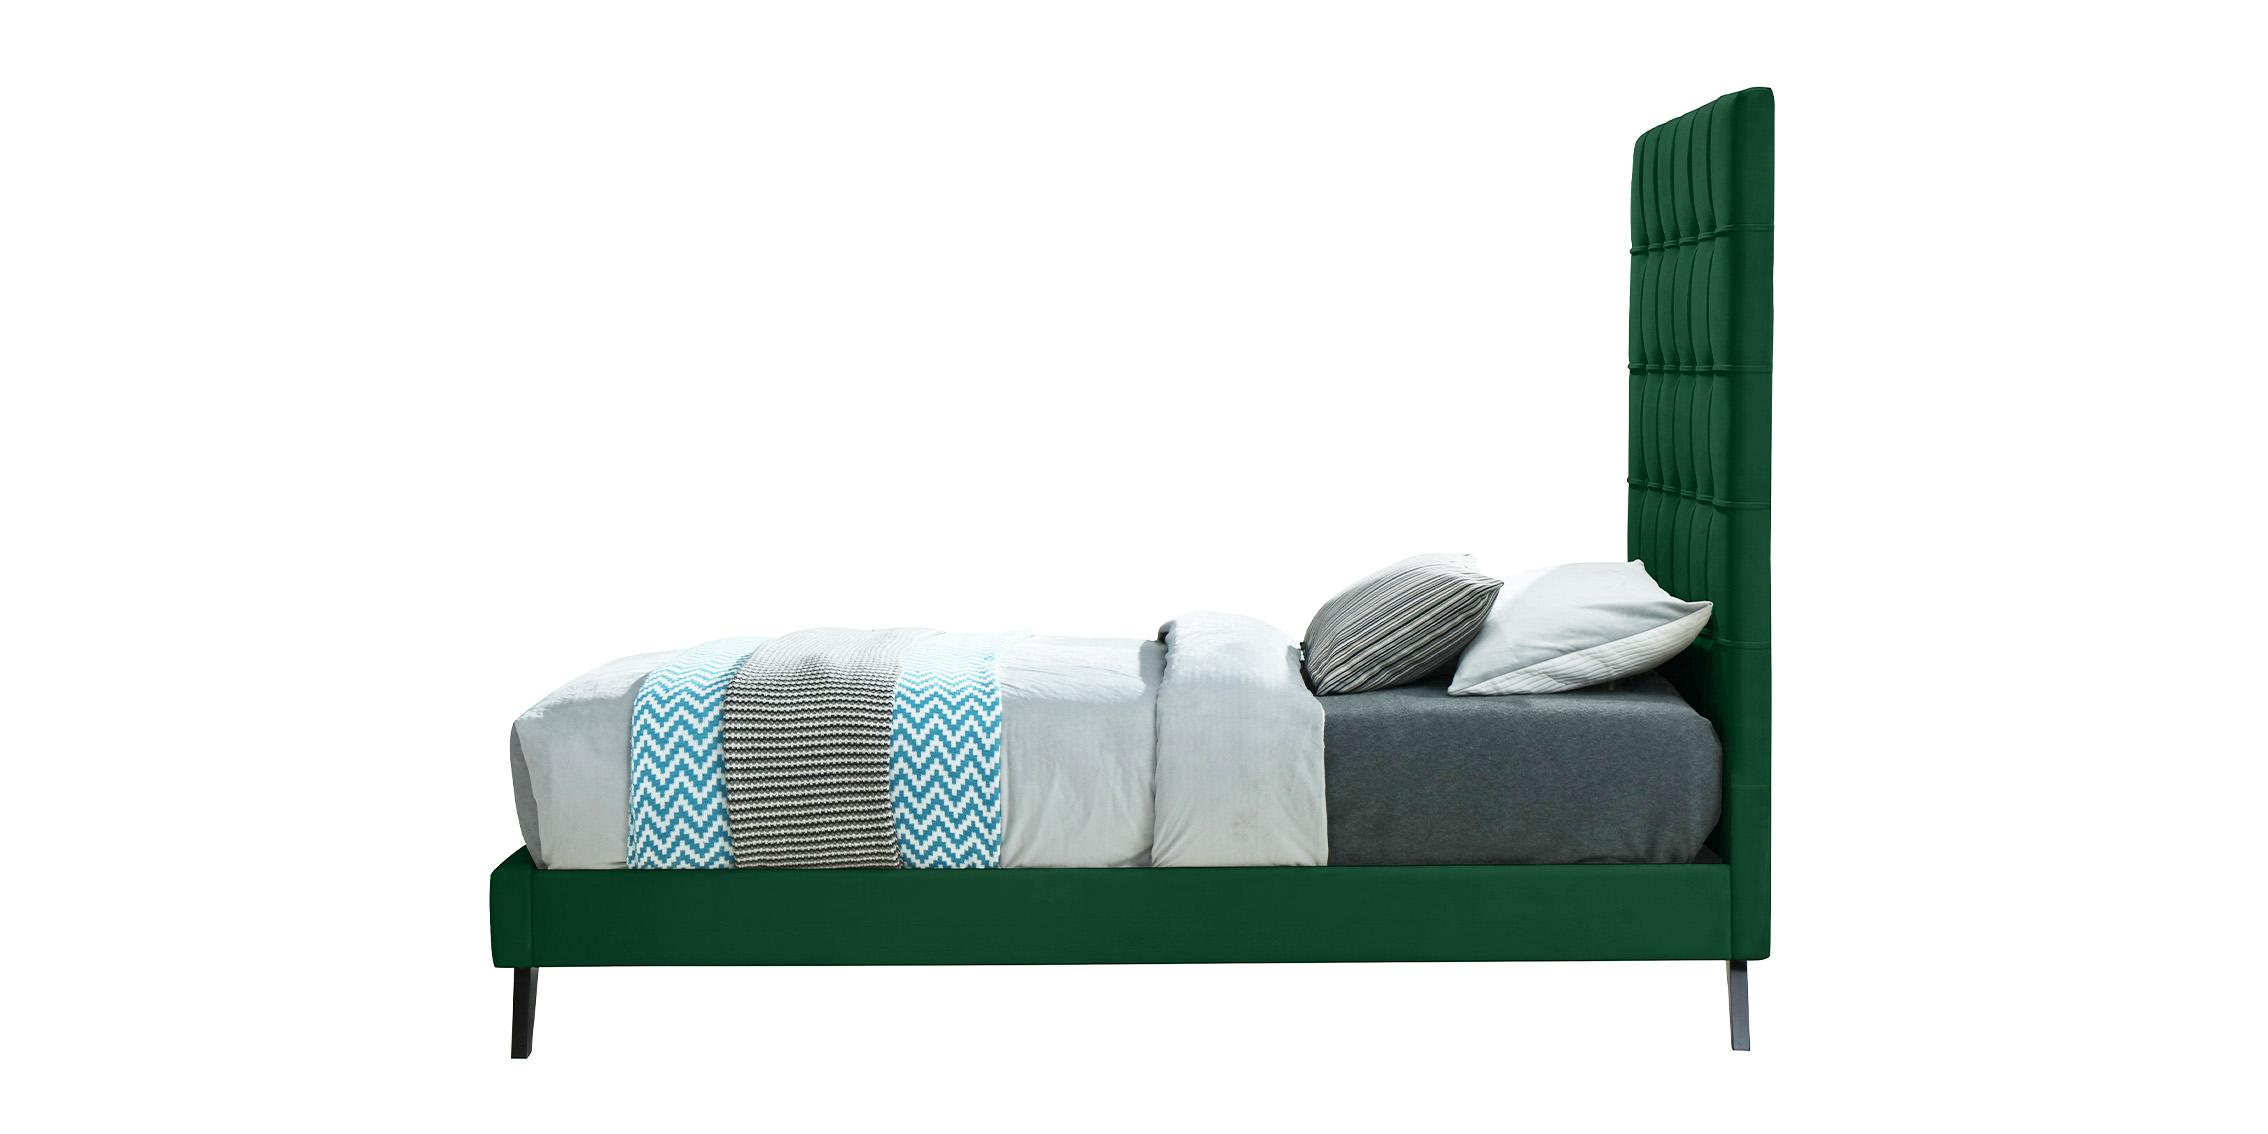 

    
EllyGreen-T Meridian Furniture Platform Bed
